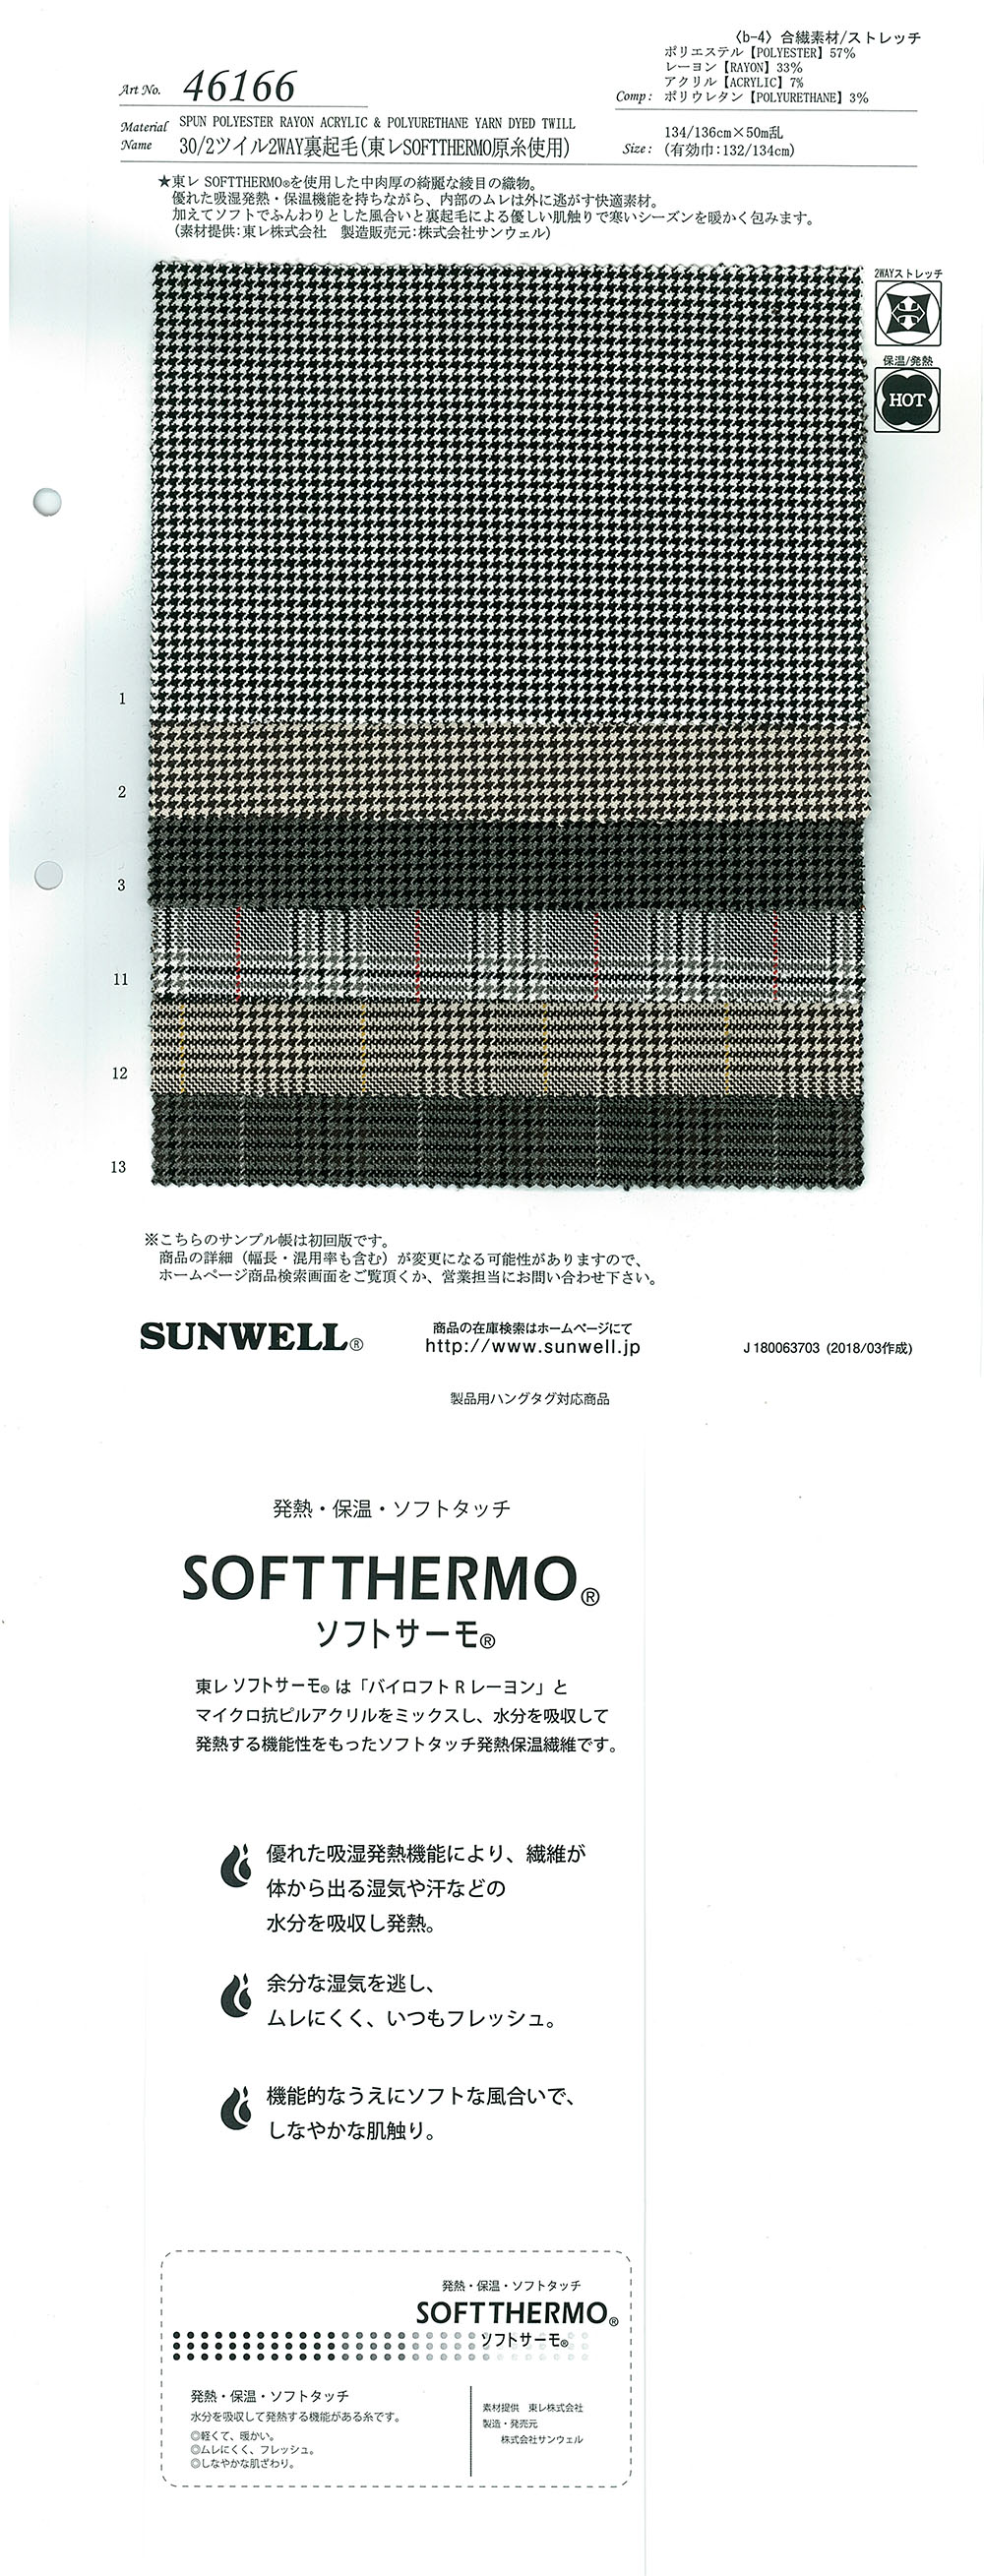 46166 Doublure Floue Bidirectionnelle En Sergé 30/2 (Avec Le Fil TORAY )[Fabrication De Textile] SUNWELL